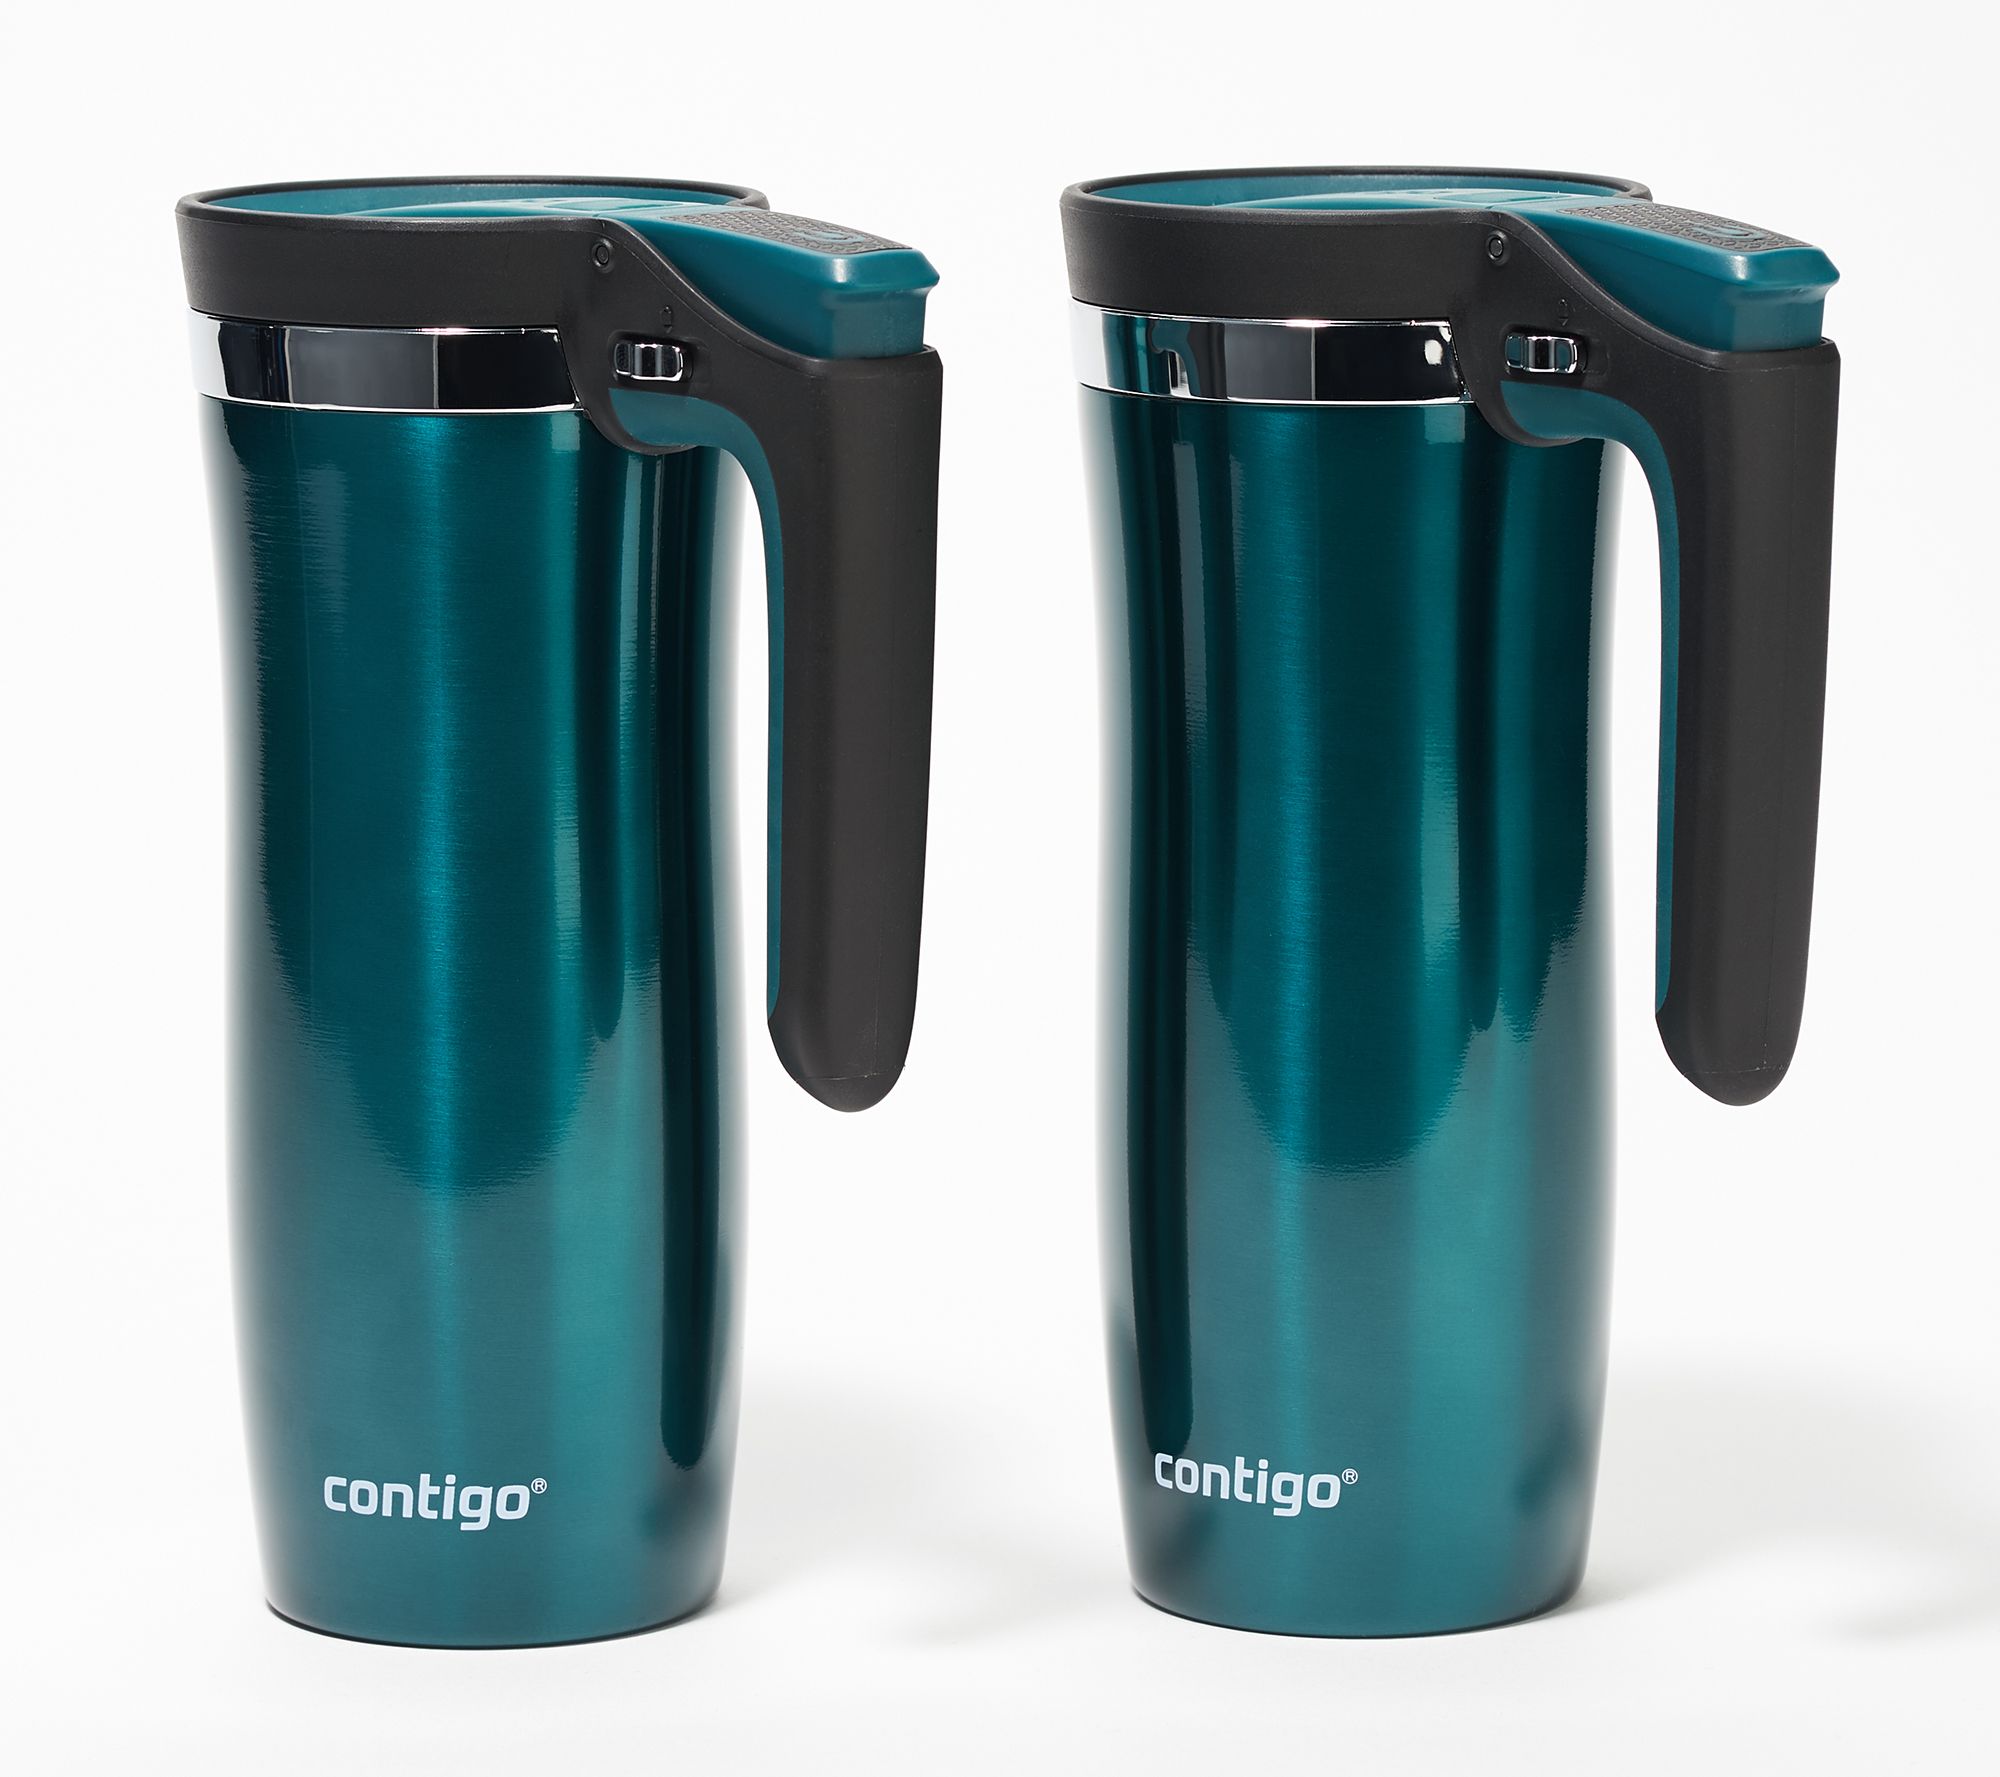 Contigo Set of (2) 16-oz Insulated Portable Mug with Handle 